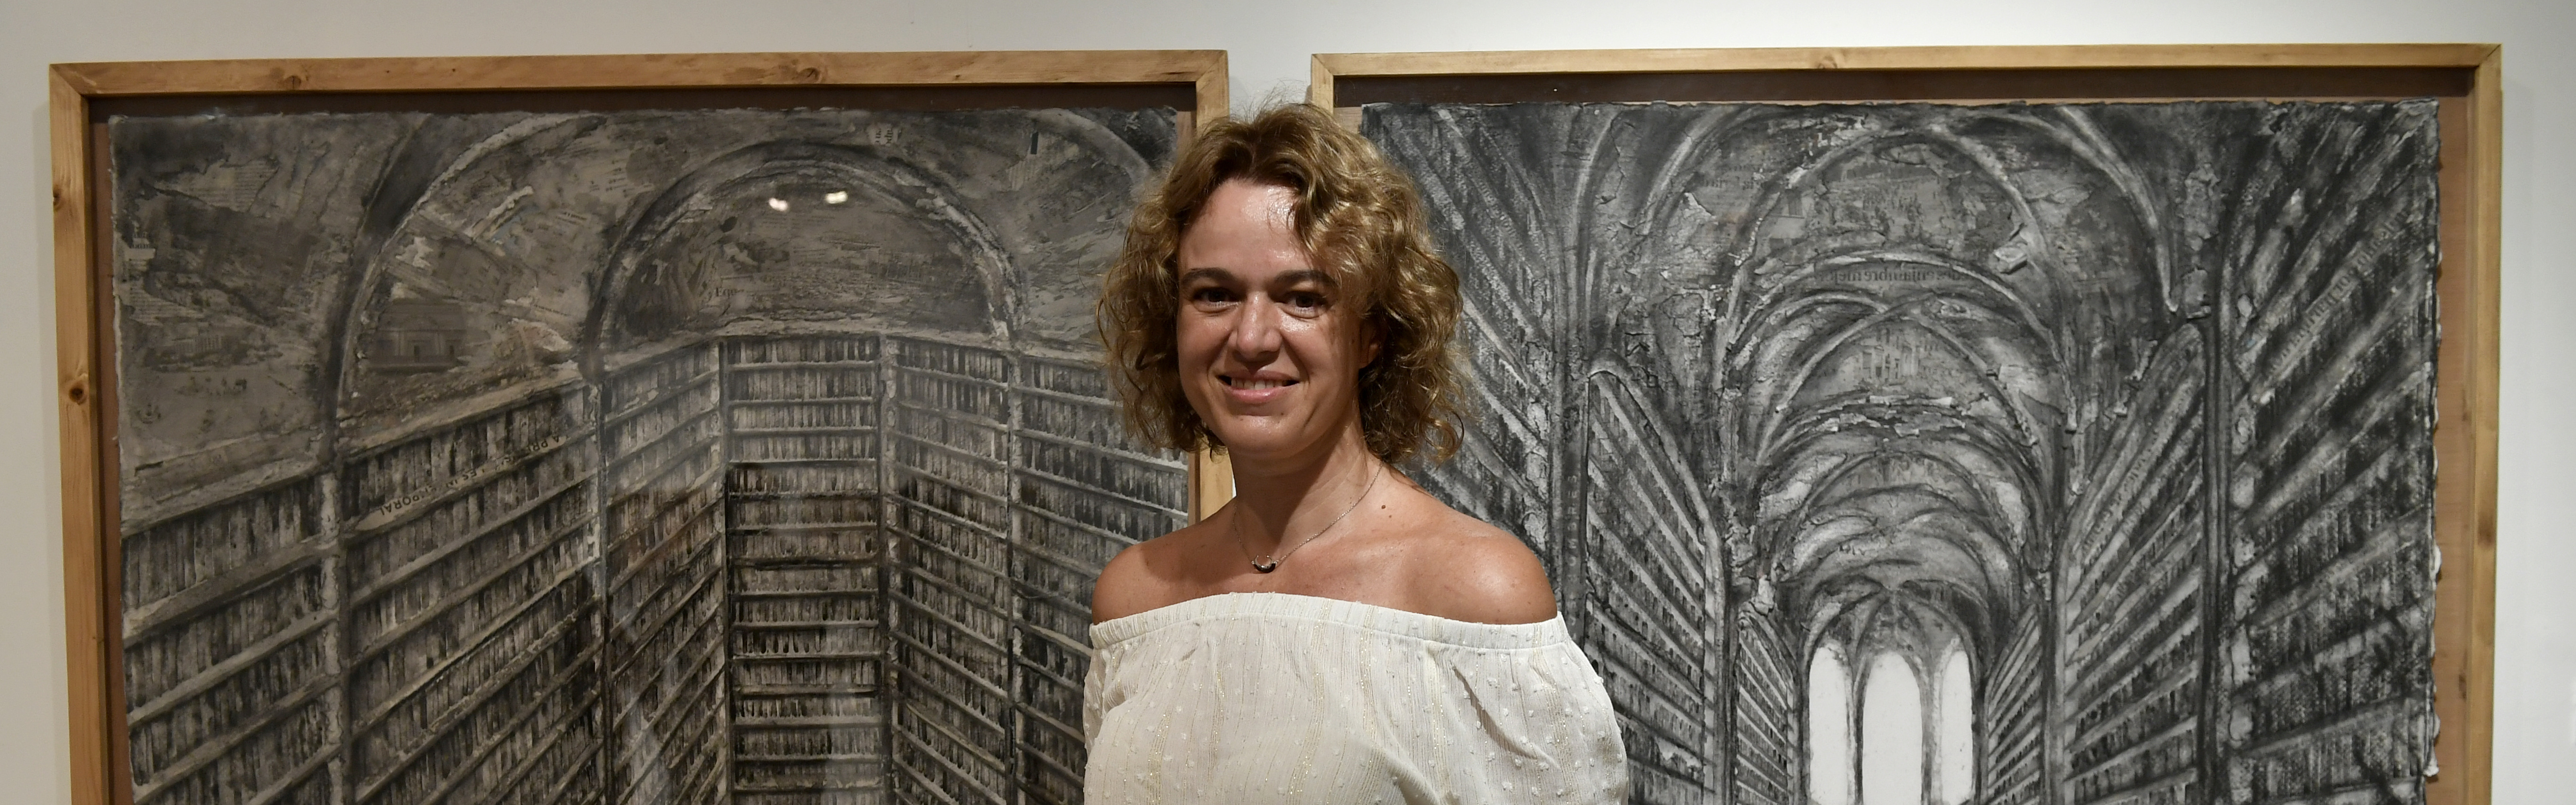 La Universidad de Murcia expone la muestra pictórica ‘Bibliotecas’ de la artista Pau Pellín